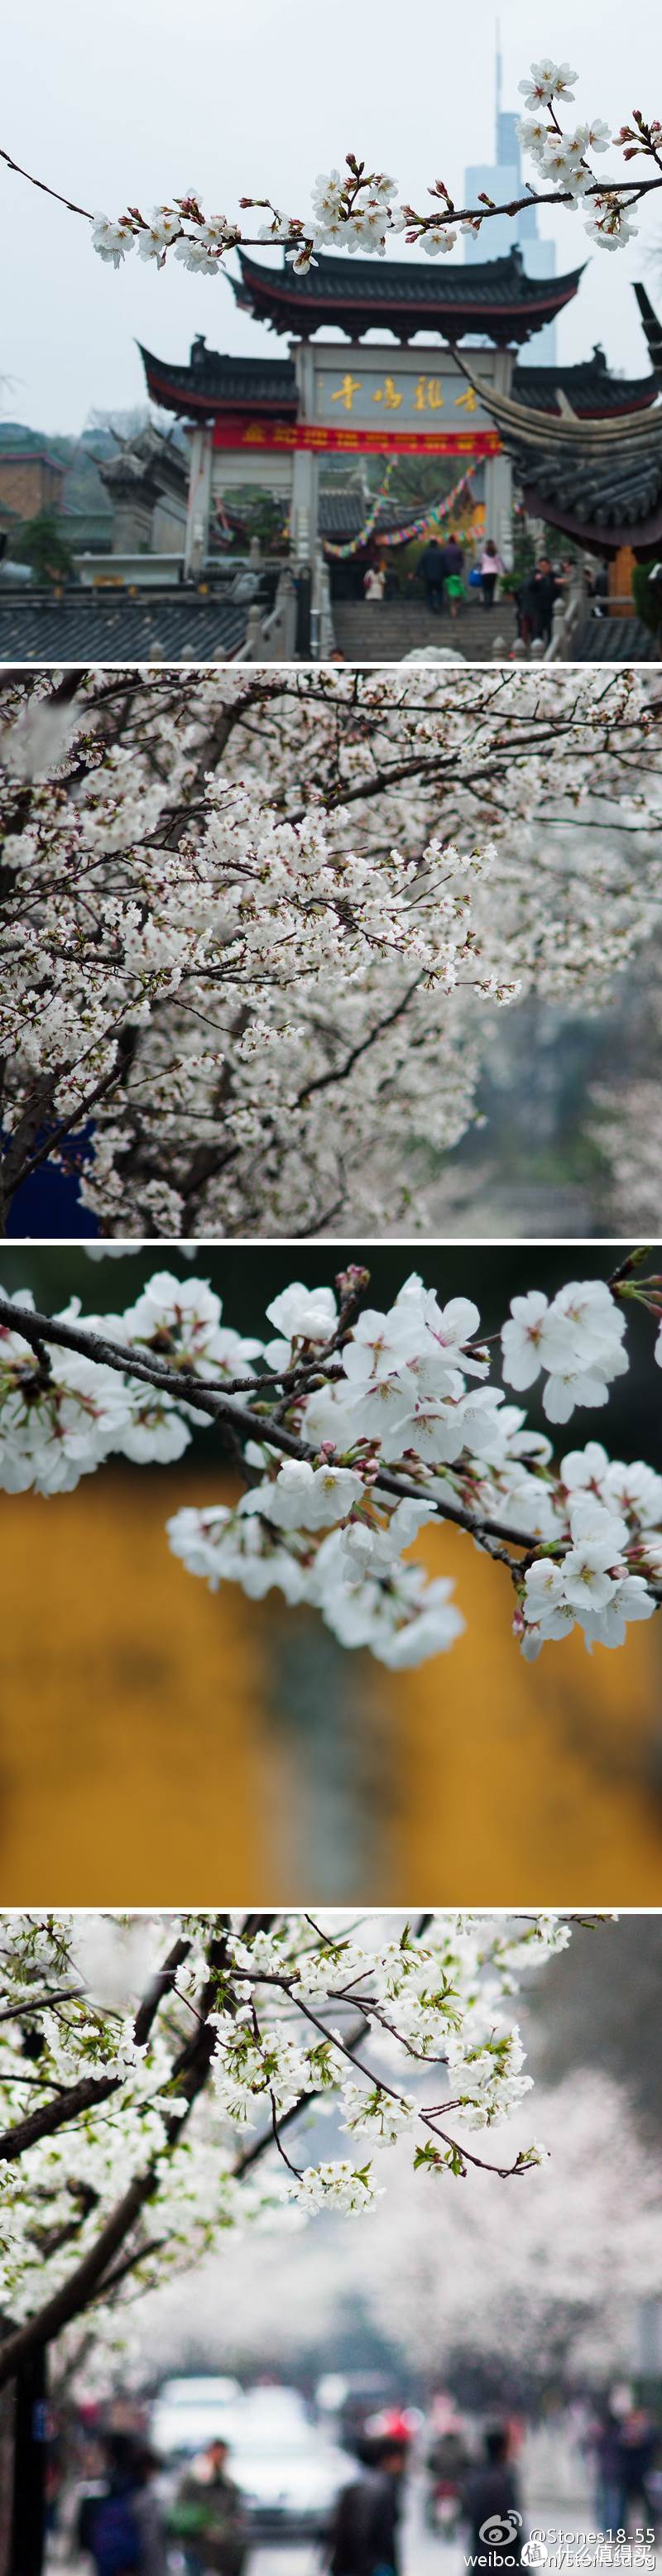 近年来许久没在樱花季前往南京，只能在微博上翻出许多年前拍的樱花照片记录